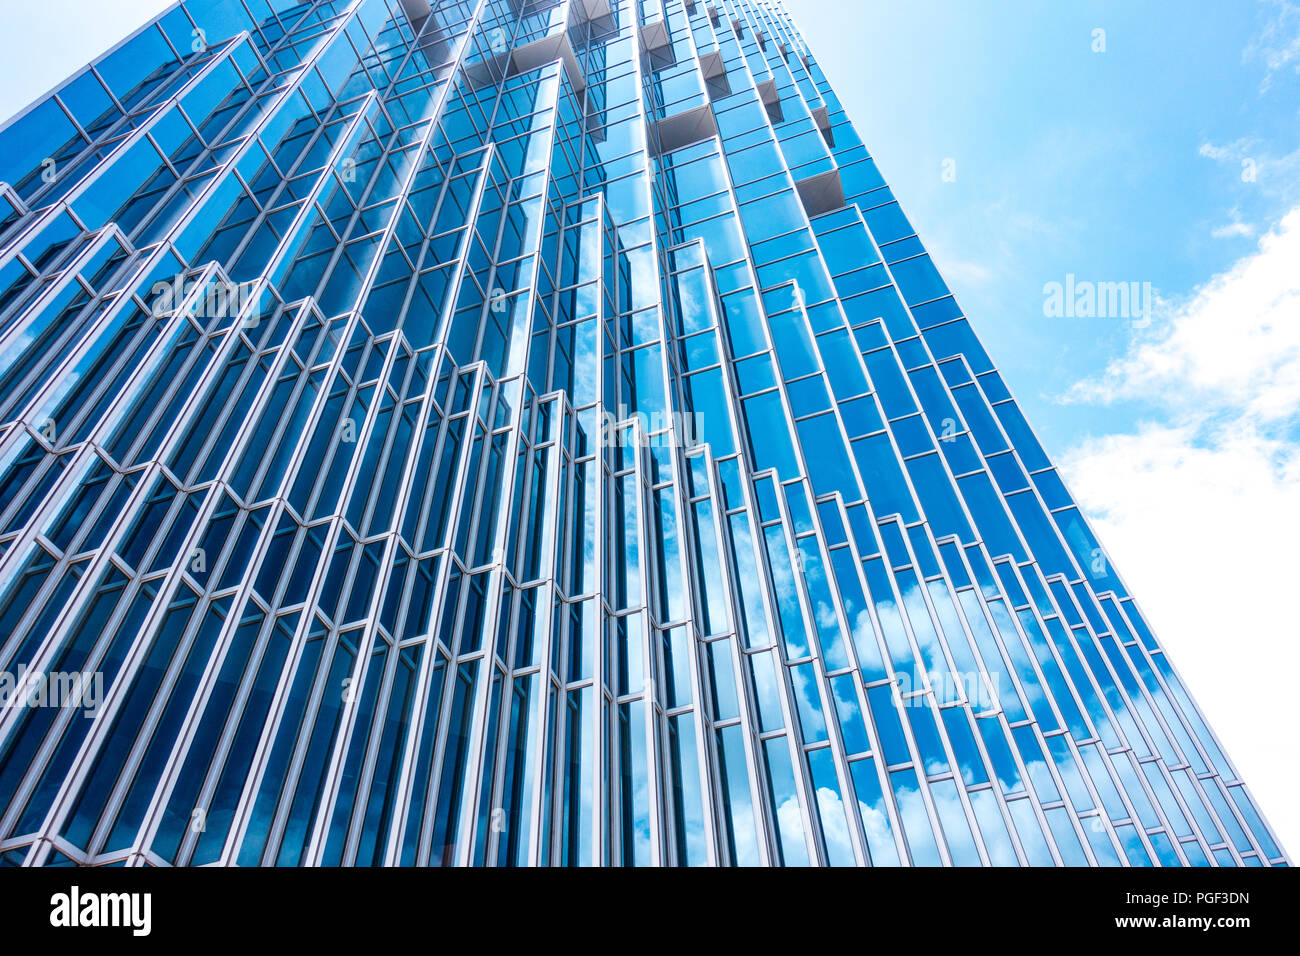 Dessous vue panoramique et vue en perspective d'un bleu acier haut bâtiment de verre des gratte-ciel, concept d'entreprise d'architecture industrielle réussie Banque D'Images